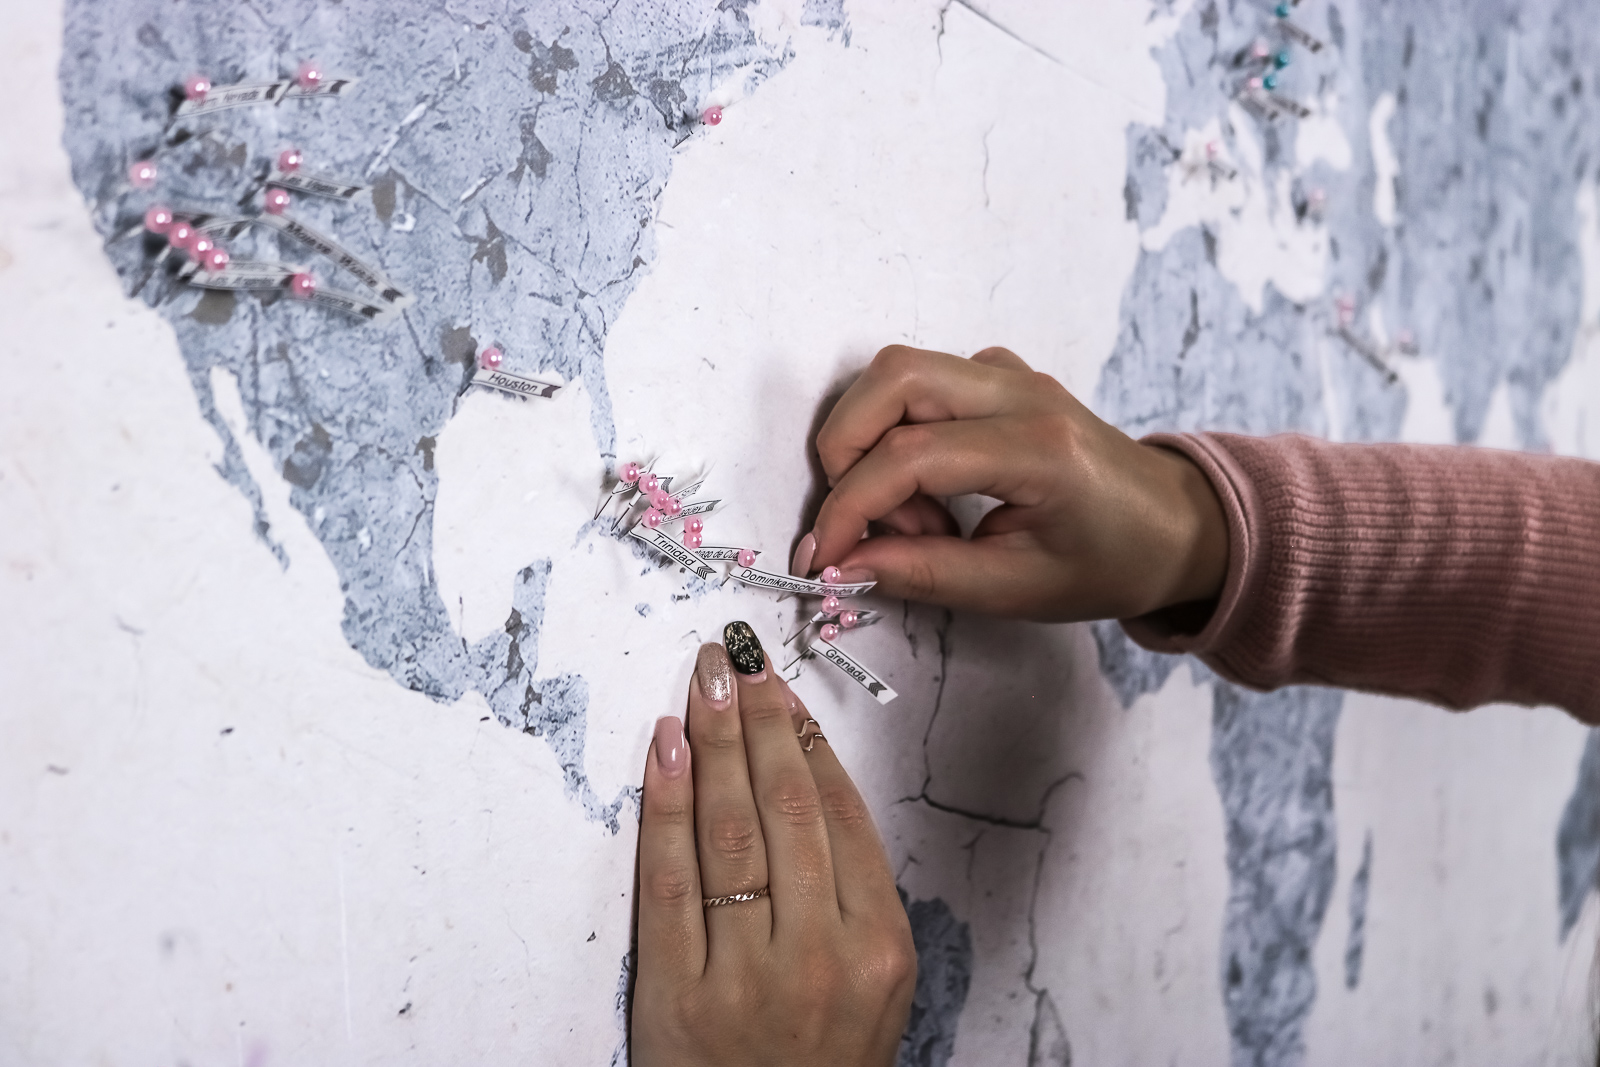 DIY: Reisekarte - Weltkarte zum aufhängen und kennzeichnen - DIY Reisekarte - Reisekarte zum kennzeichnen von Ländern - Reisekarte Bild auf Kork - Weltkarte zum kennzeichnen mit Nadeln selber machen - Reisekarte selber machen - Fashionladyloves by Tamara Wagner-Lifestyleblog